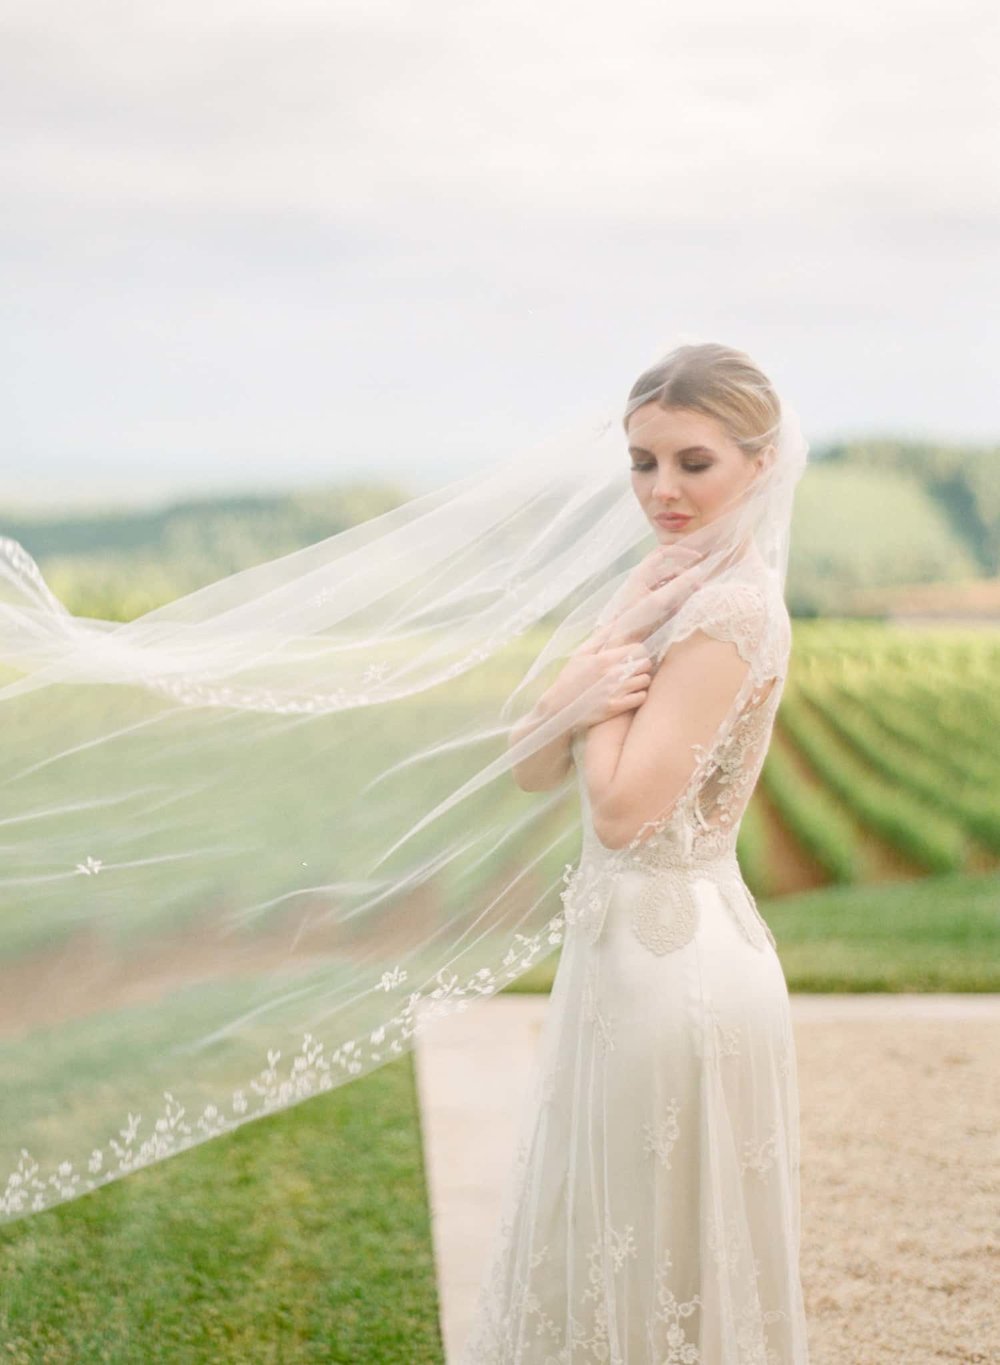 Bridal portrait with delicate veil 